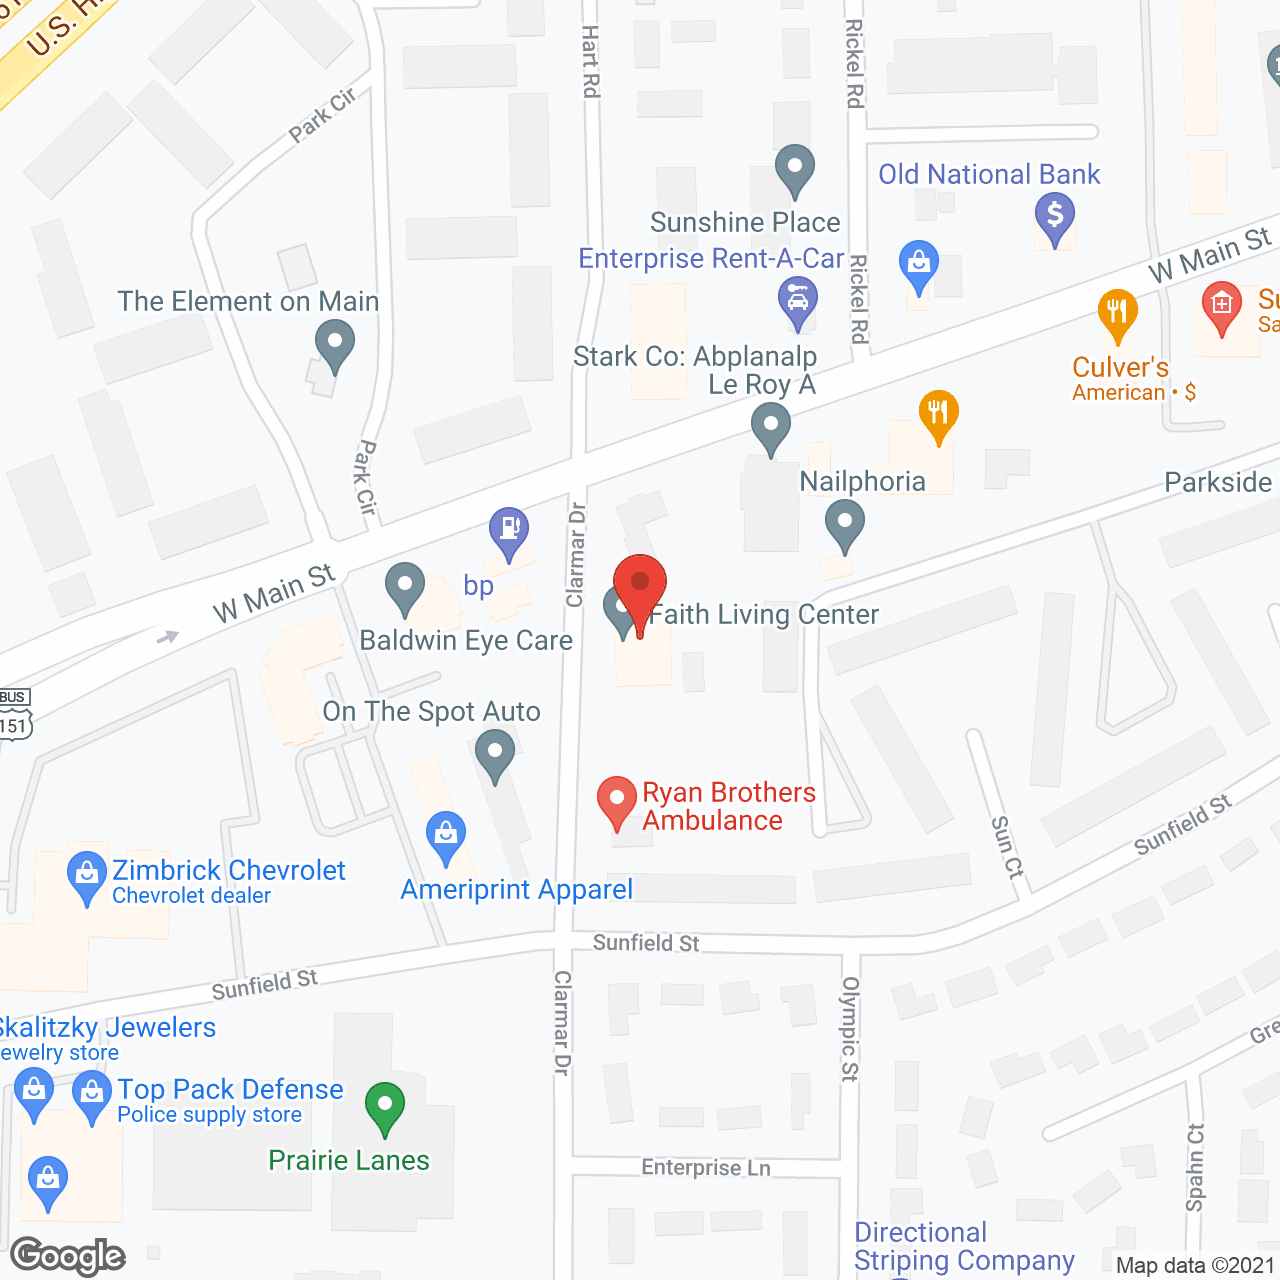 Faith Living Center in google map